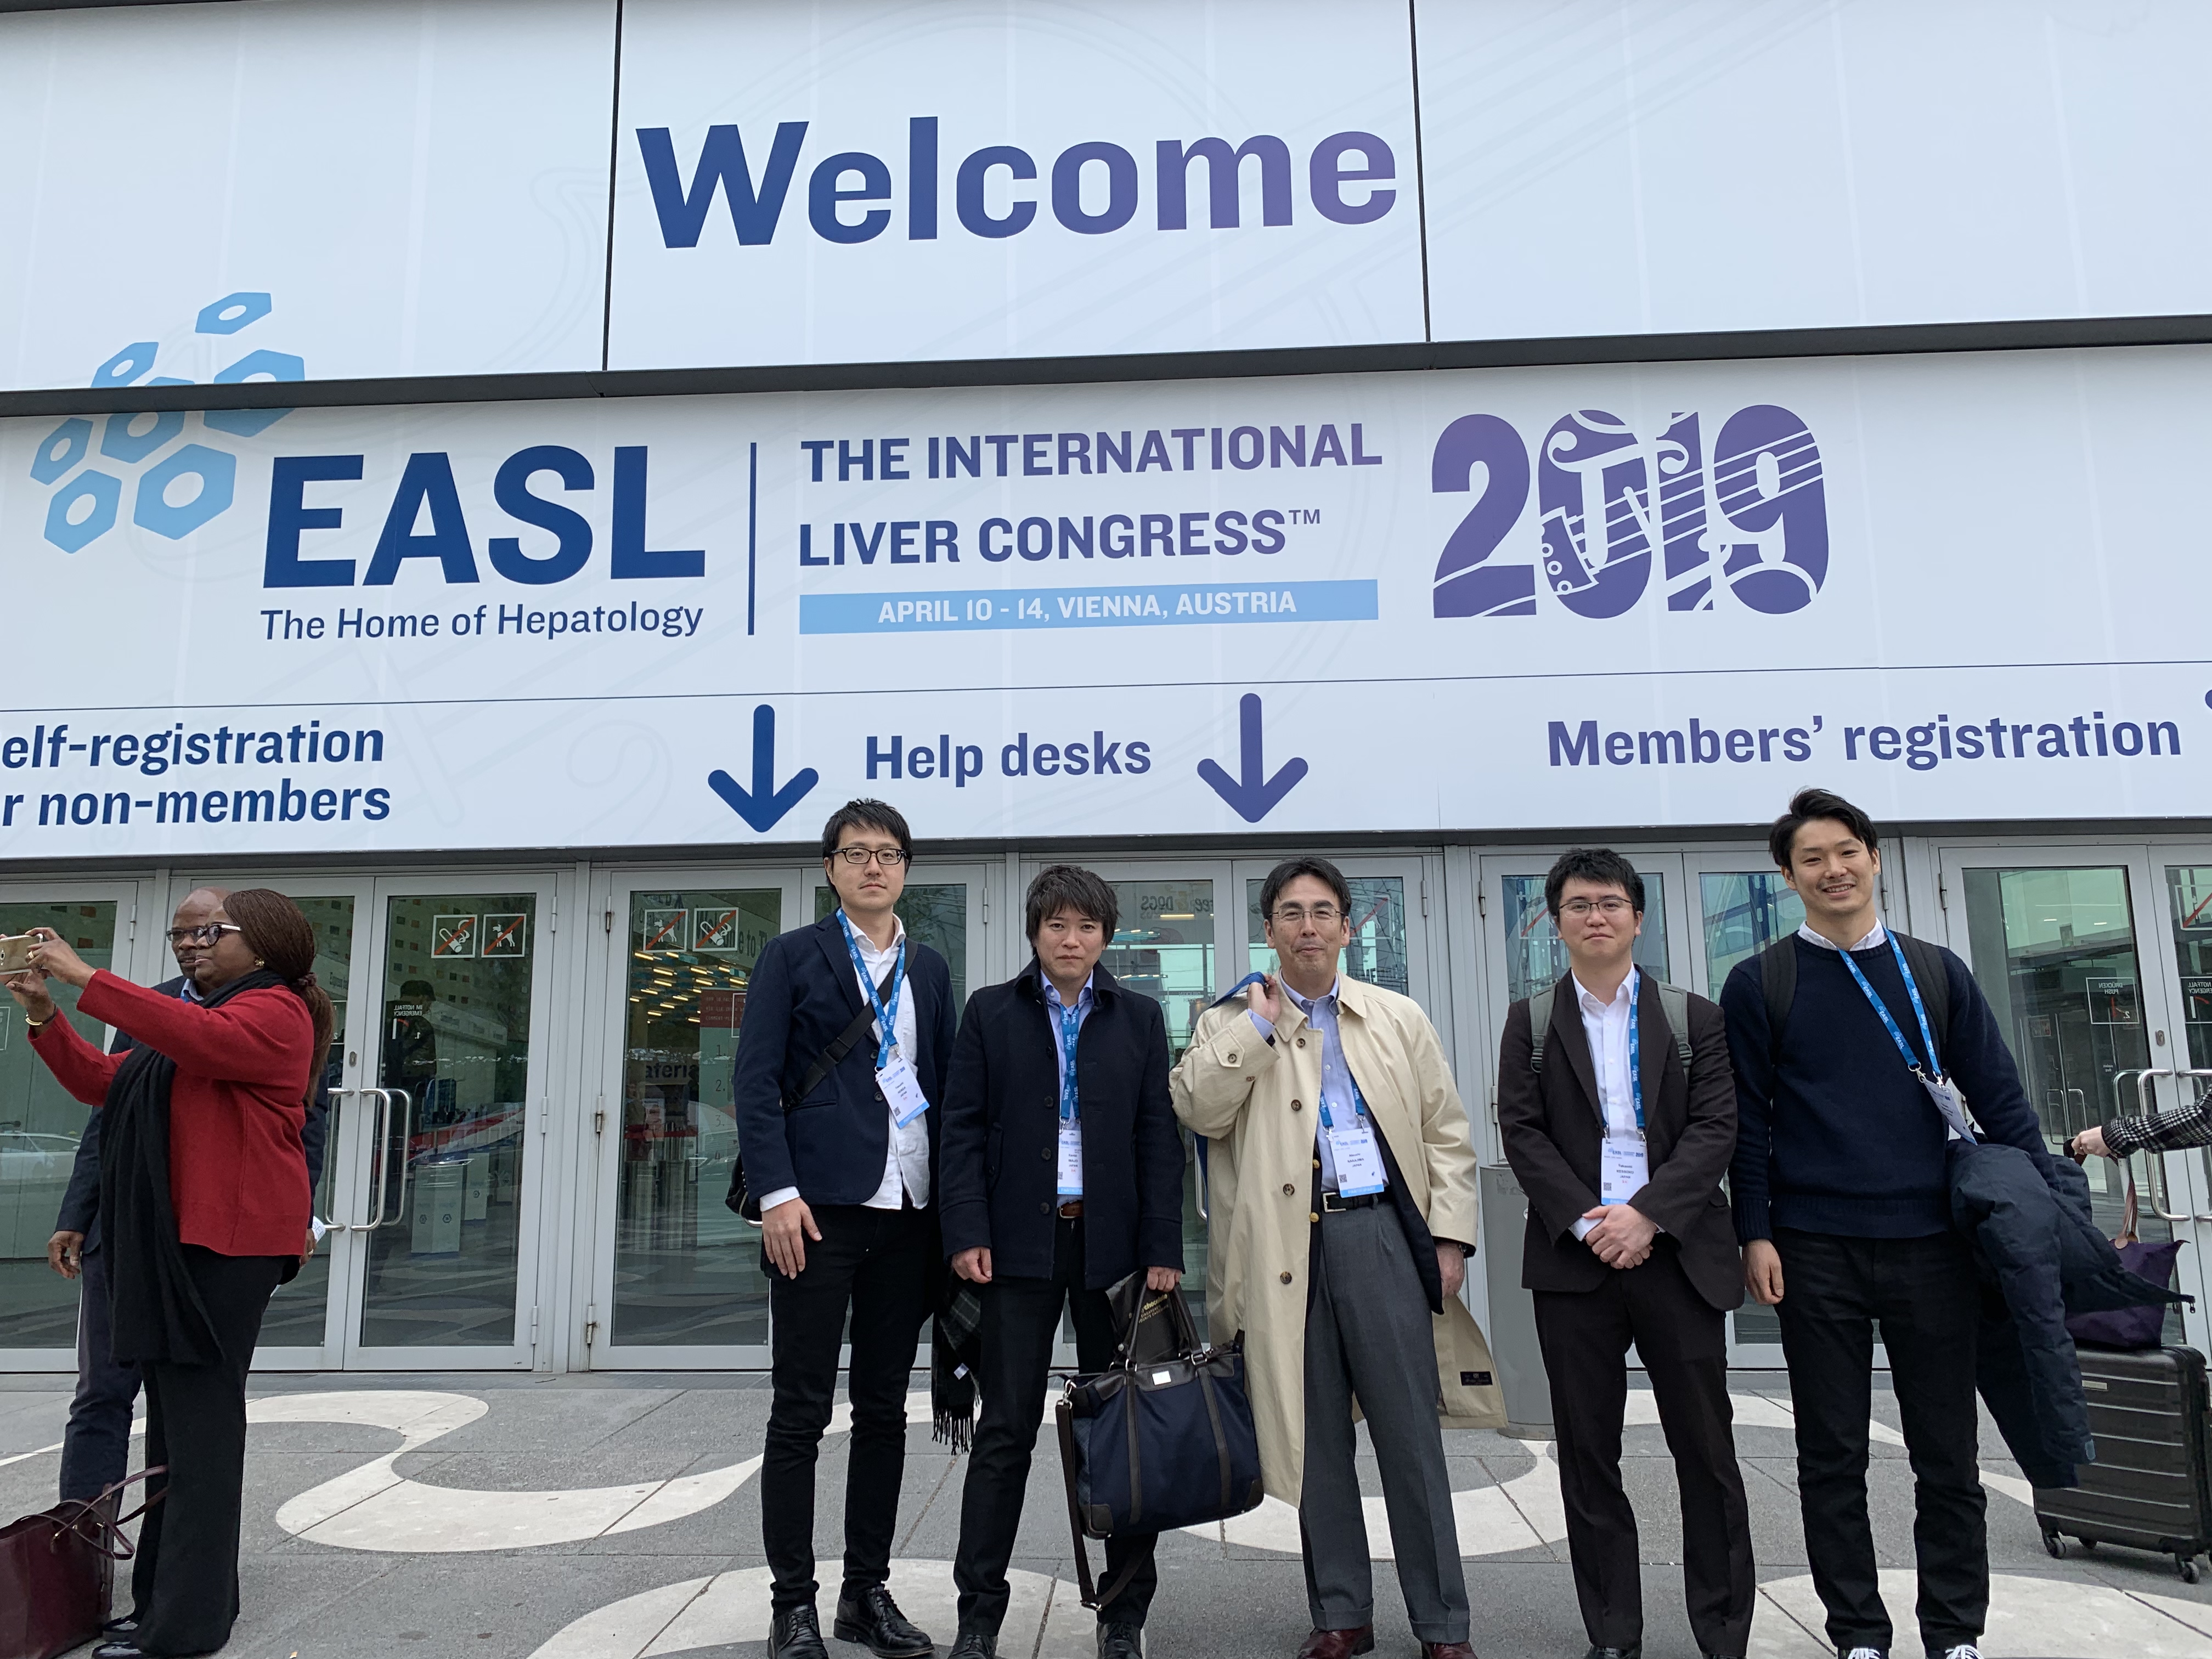 EASL(欧州肝臓学会) International Liver Congress 2019